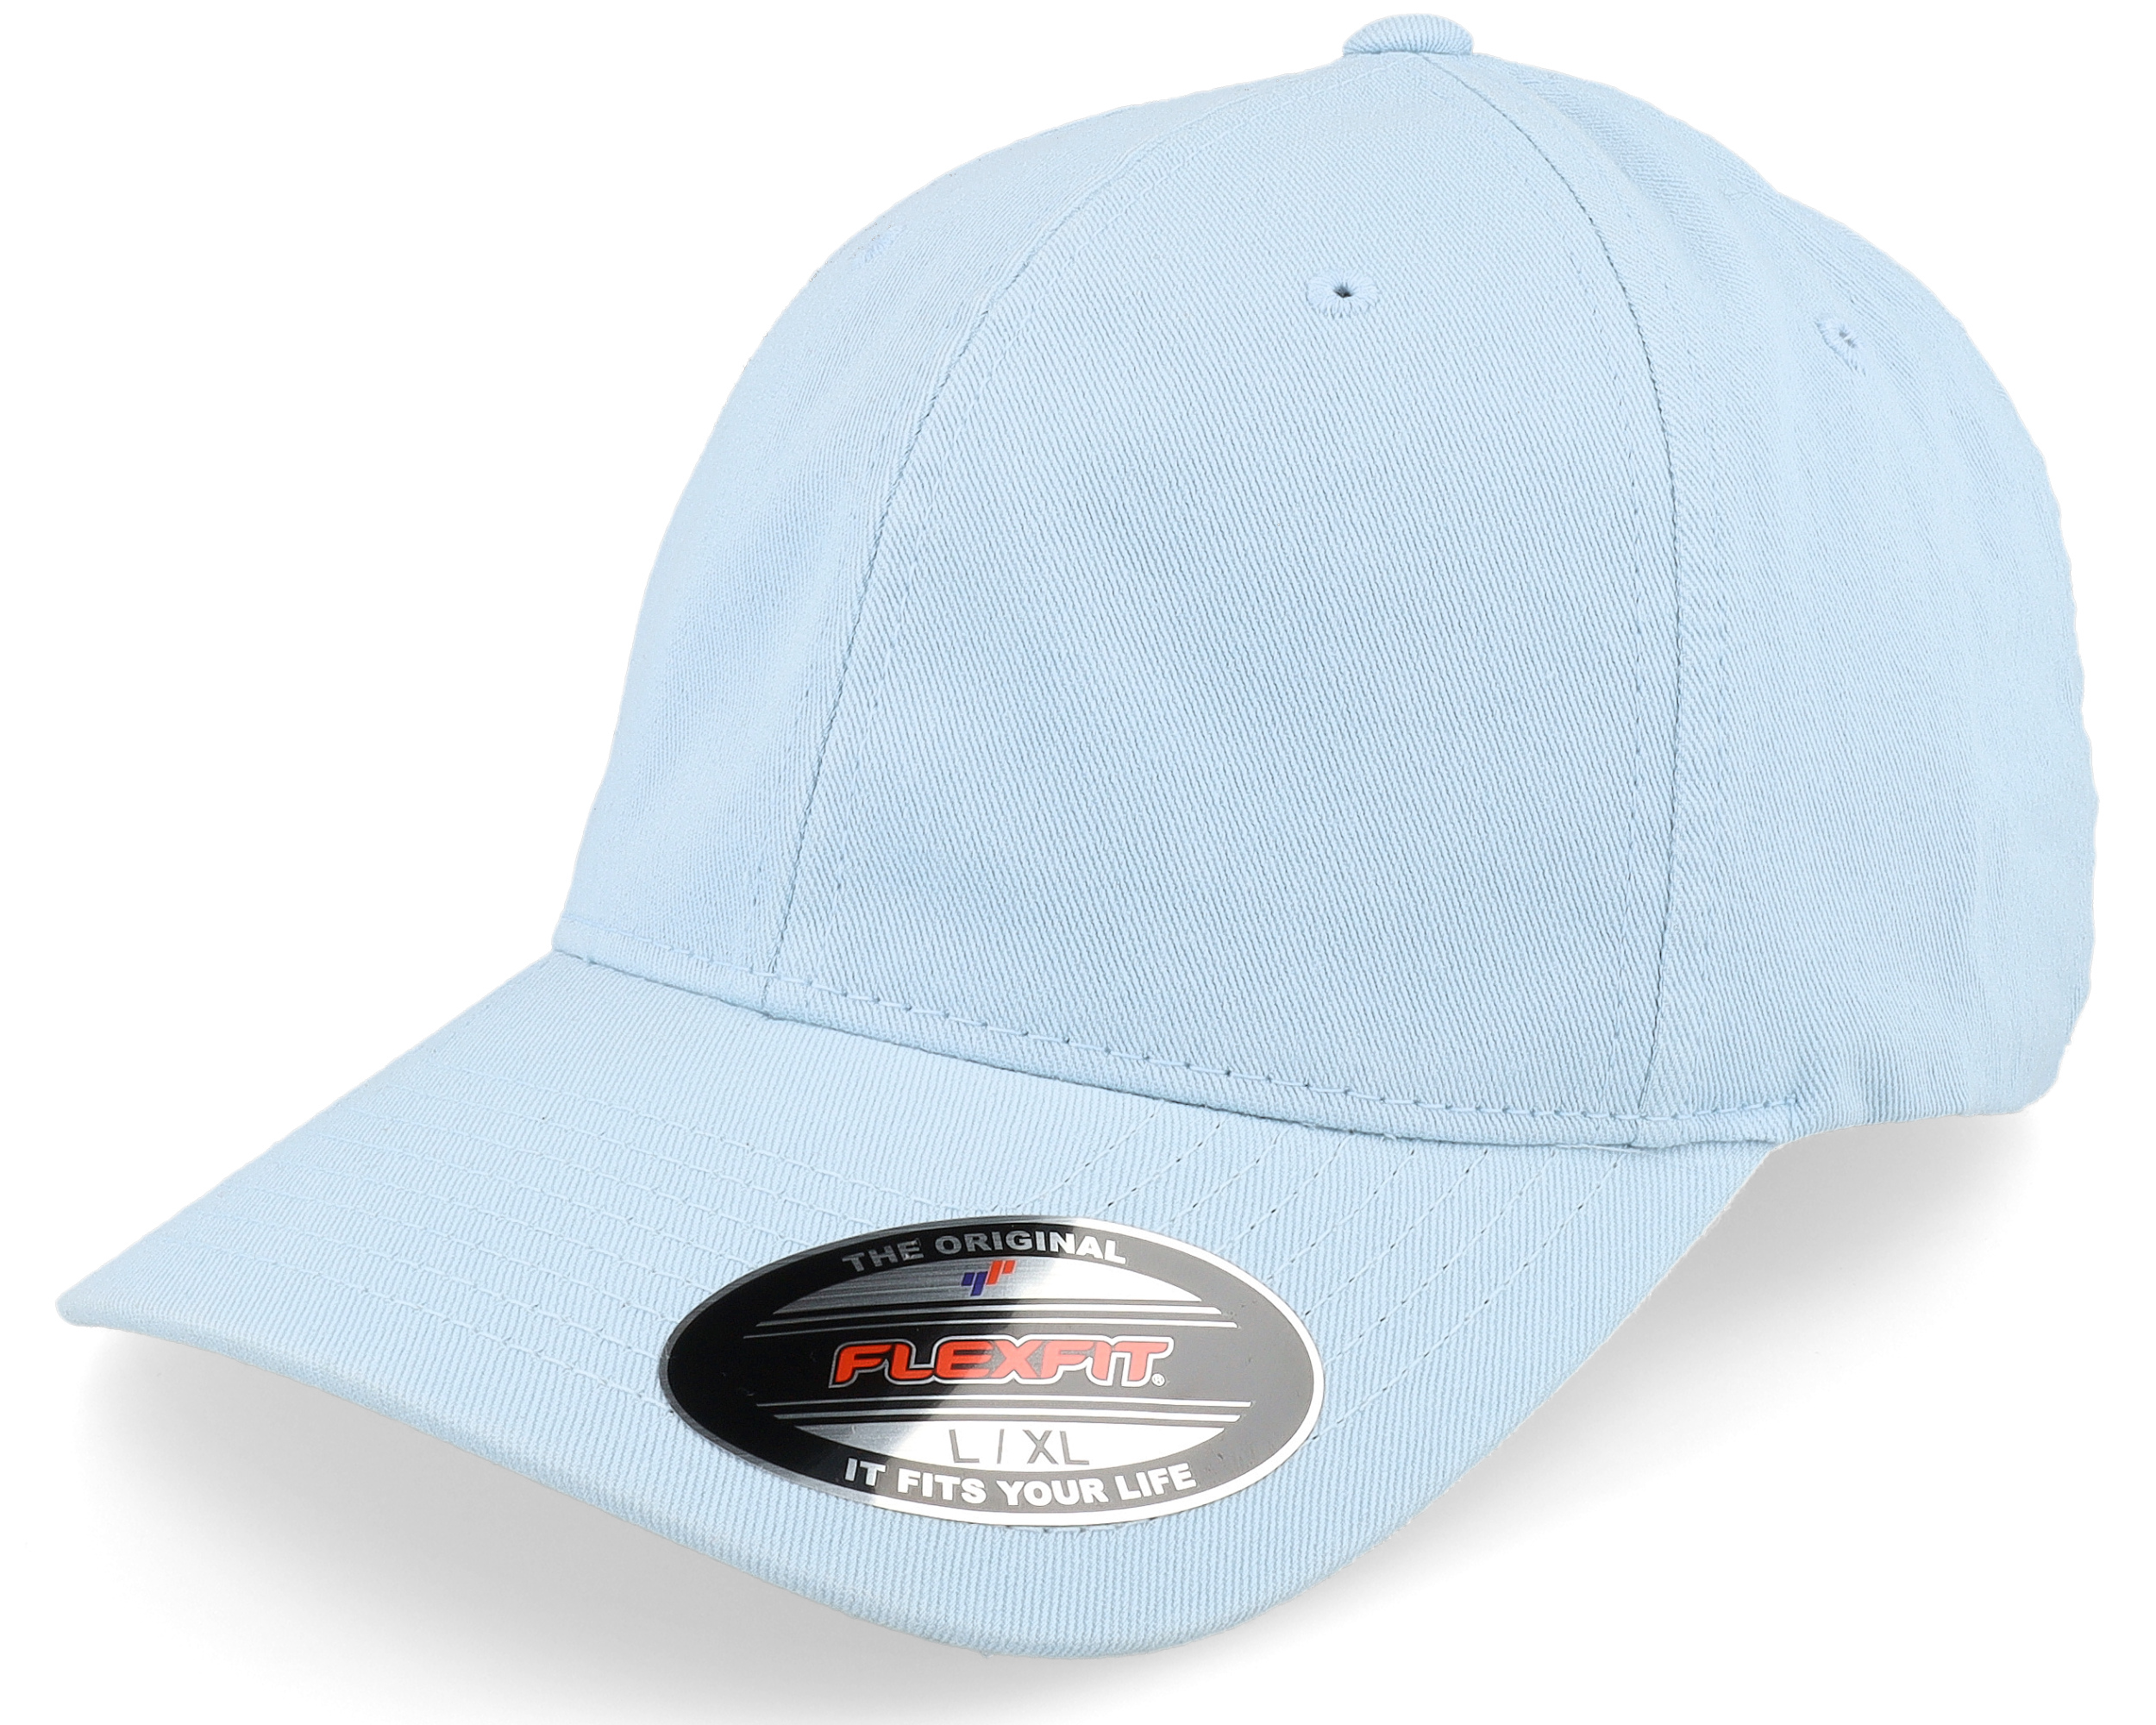 Washed Cotton Light Blue Dad Cap - Flexfit cap